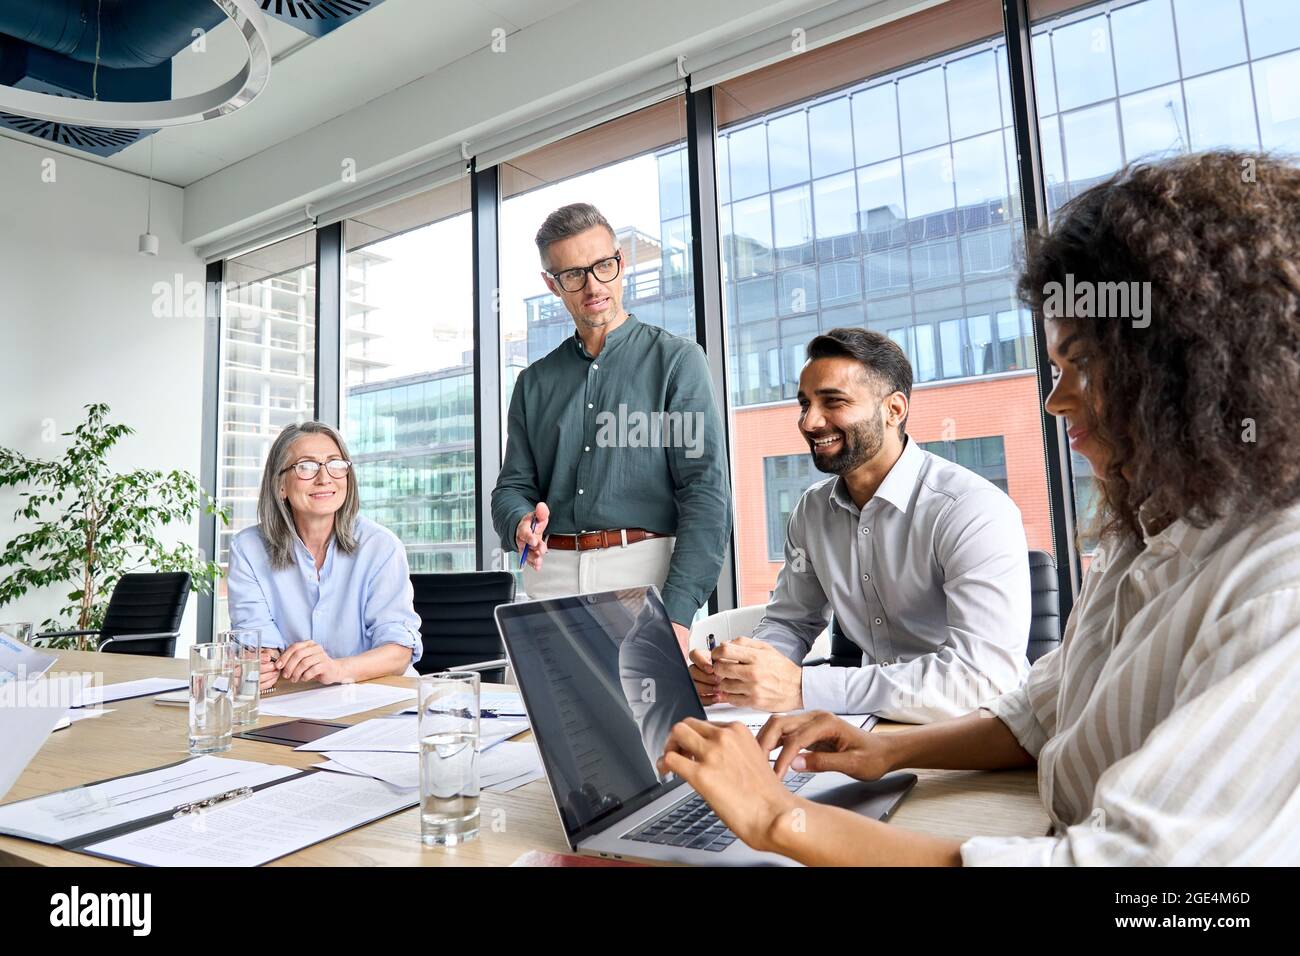 Chef de la direction, homme parlant avec des partenaires lors d'une réunion dans une salle de réunion dans un bureau moderne. Banque D'Images